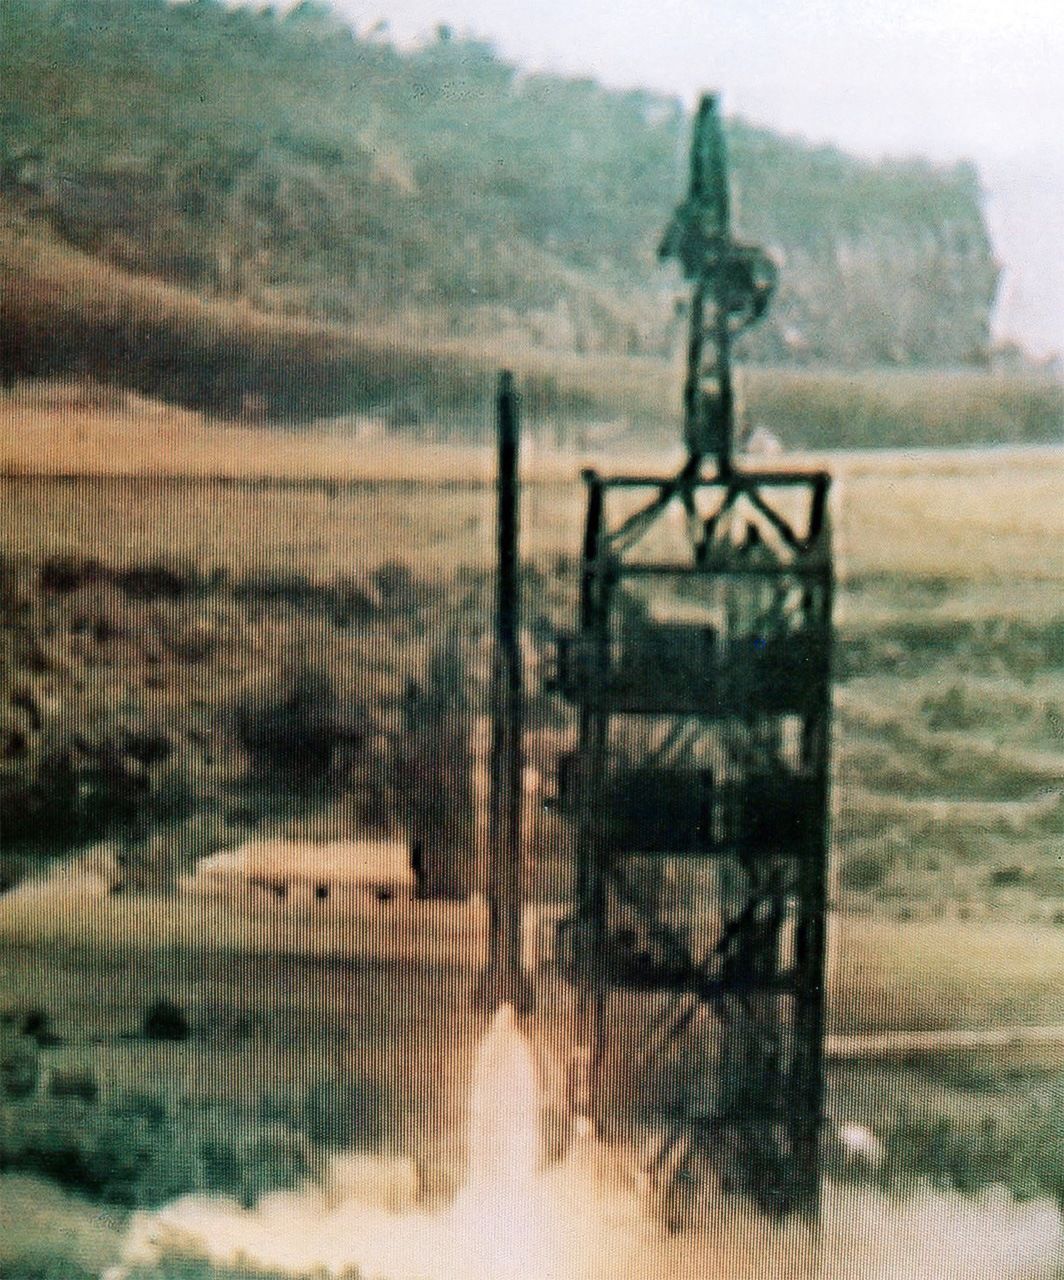 Северокорейская ракета «Тэпходон», запуск состоялся 31 августа 1998 г. (KCNA/AP/Aflo)